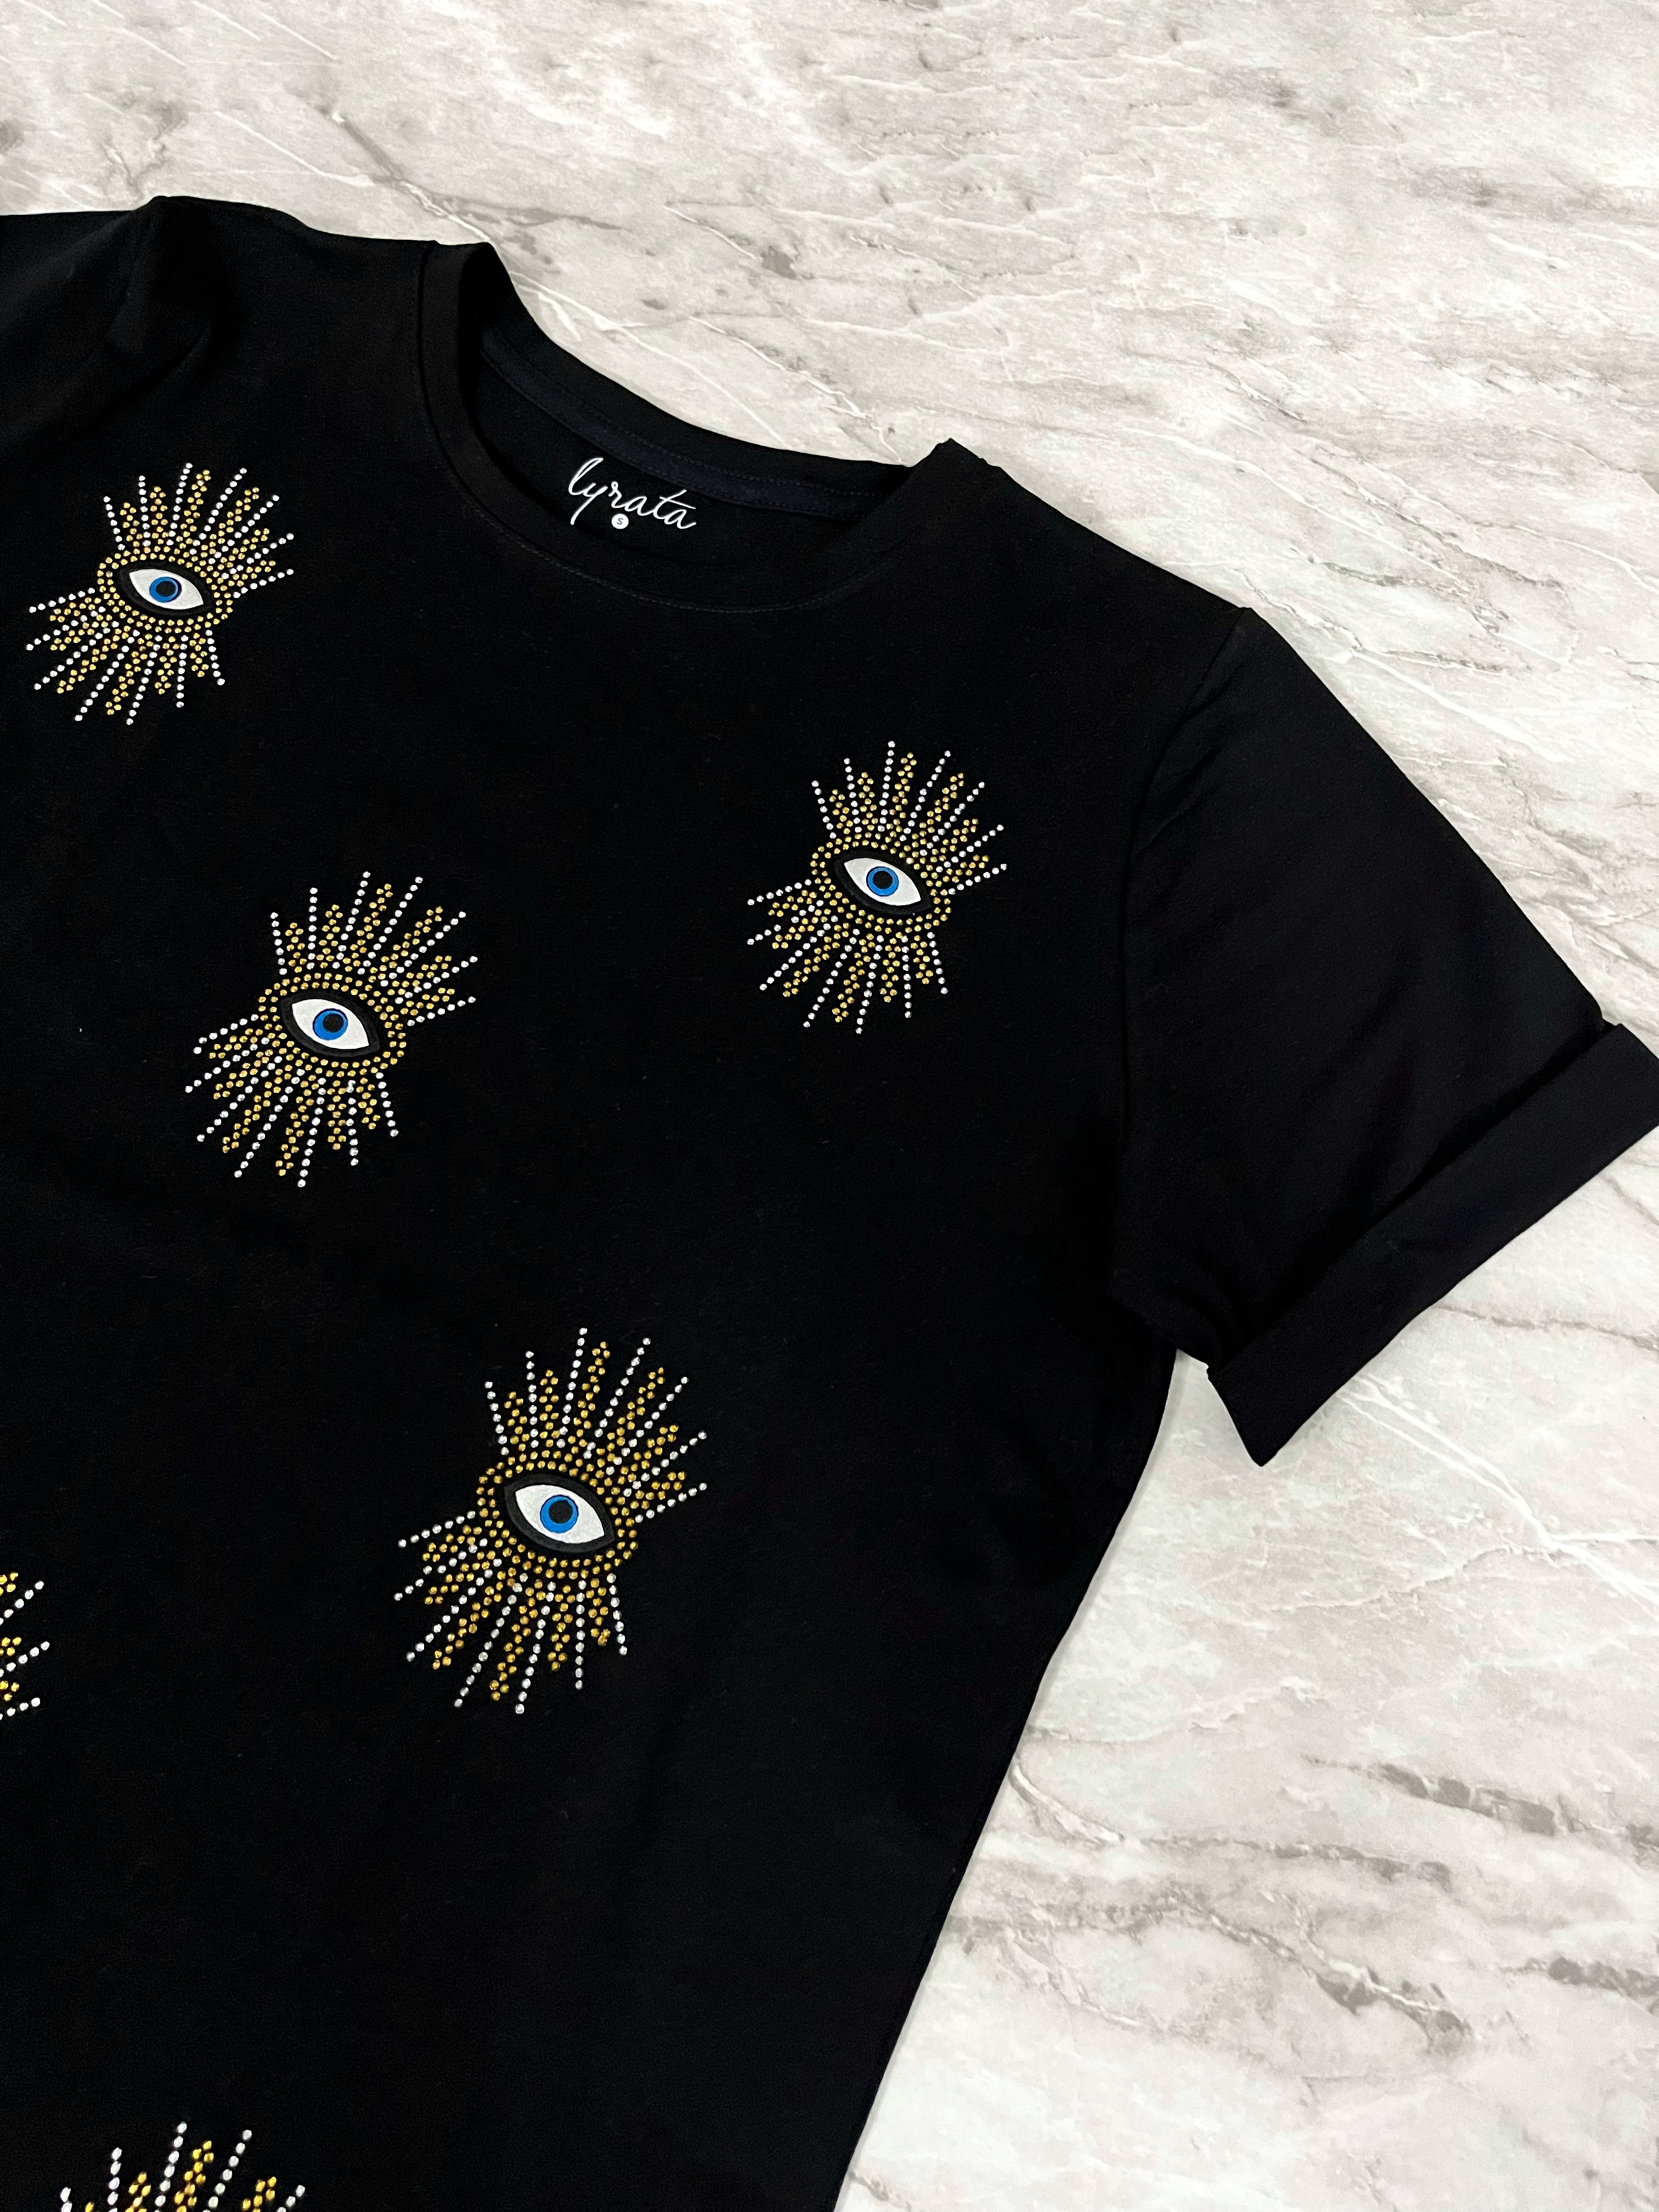 Camiseta ojos turcos